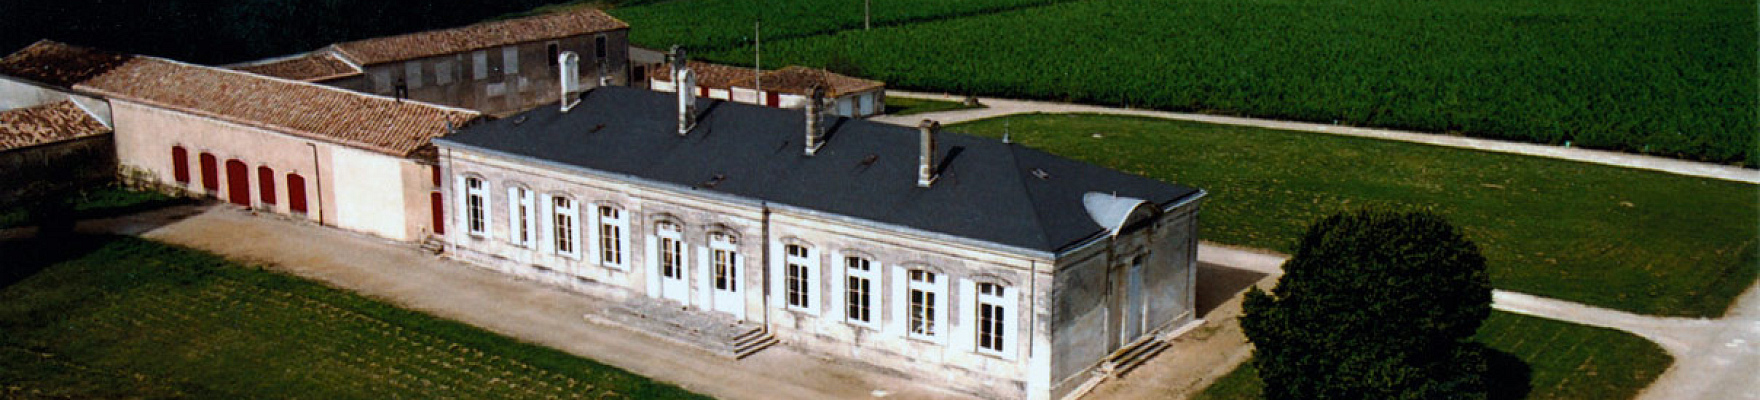 Château Mayne Vieil